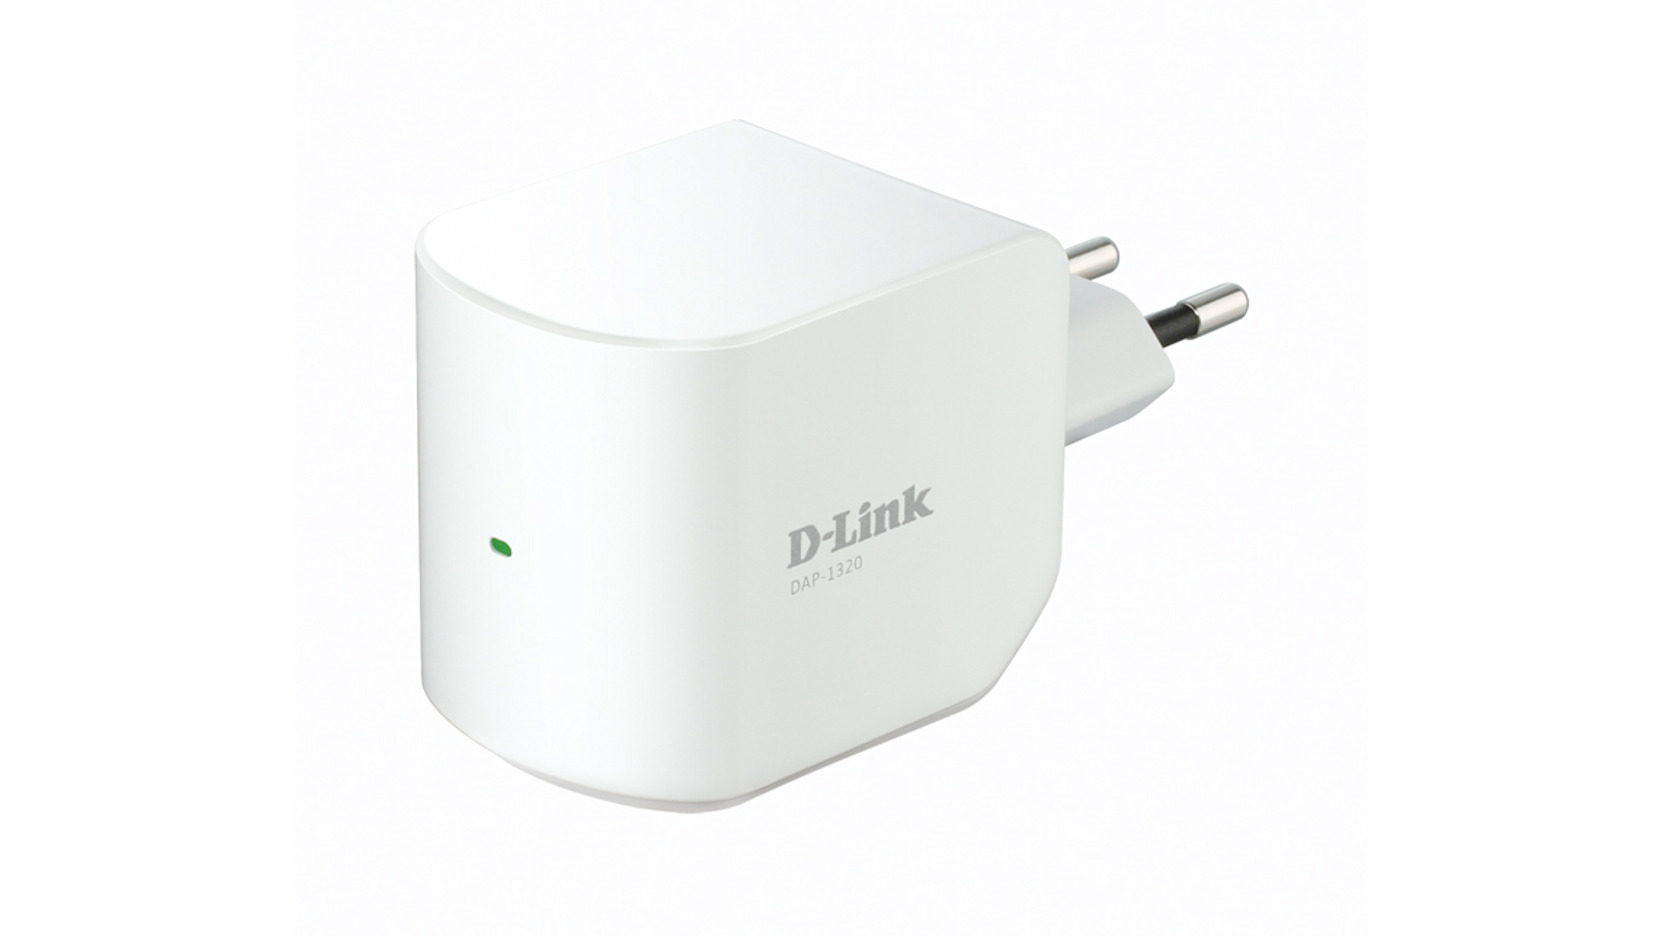 Wireless D-Link DAP-1320 